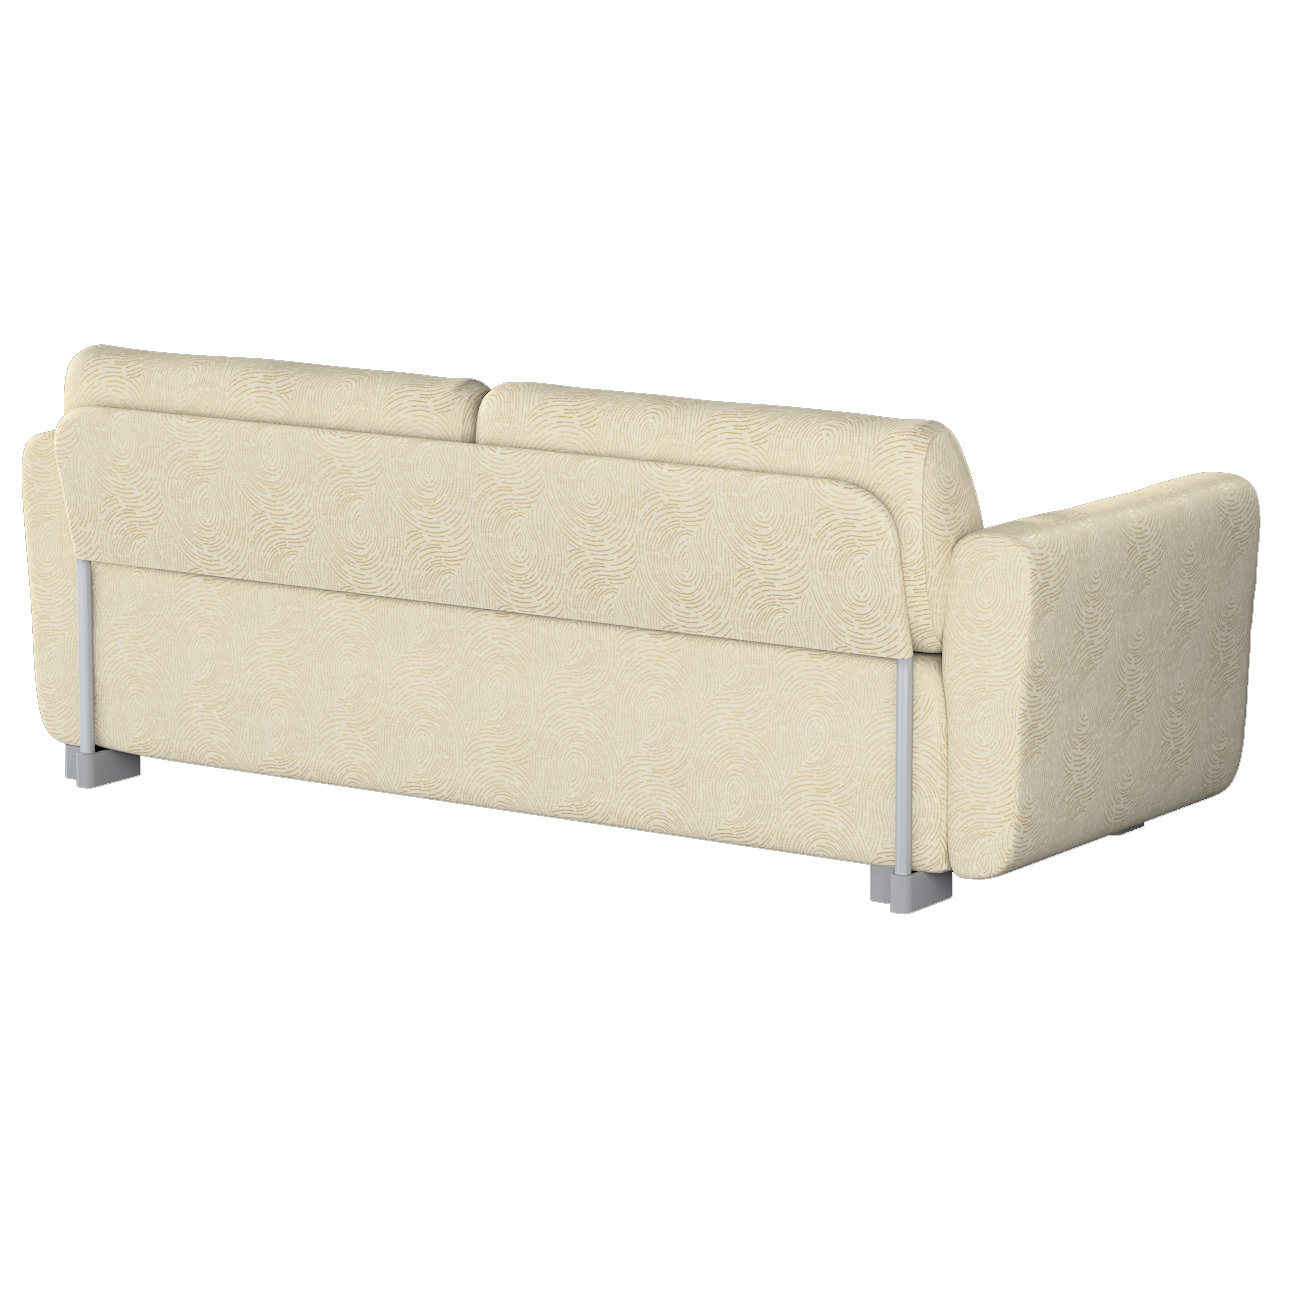 Bezug für Mysinge 2-Sitzer Sofa, beige-golden, Sofabezug Mysinge 2-Sitzer, günstig online kaufen